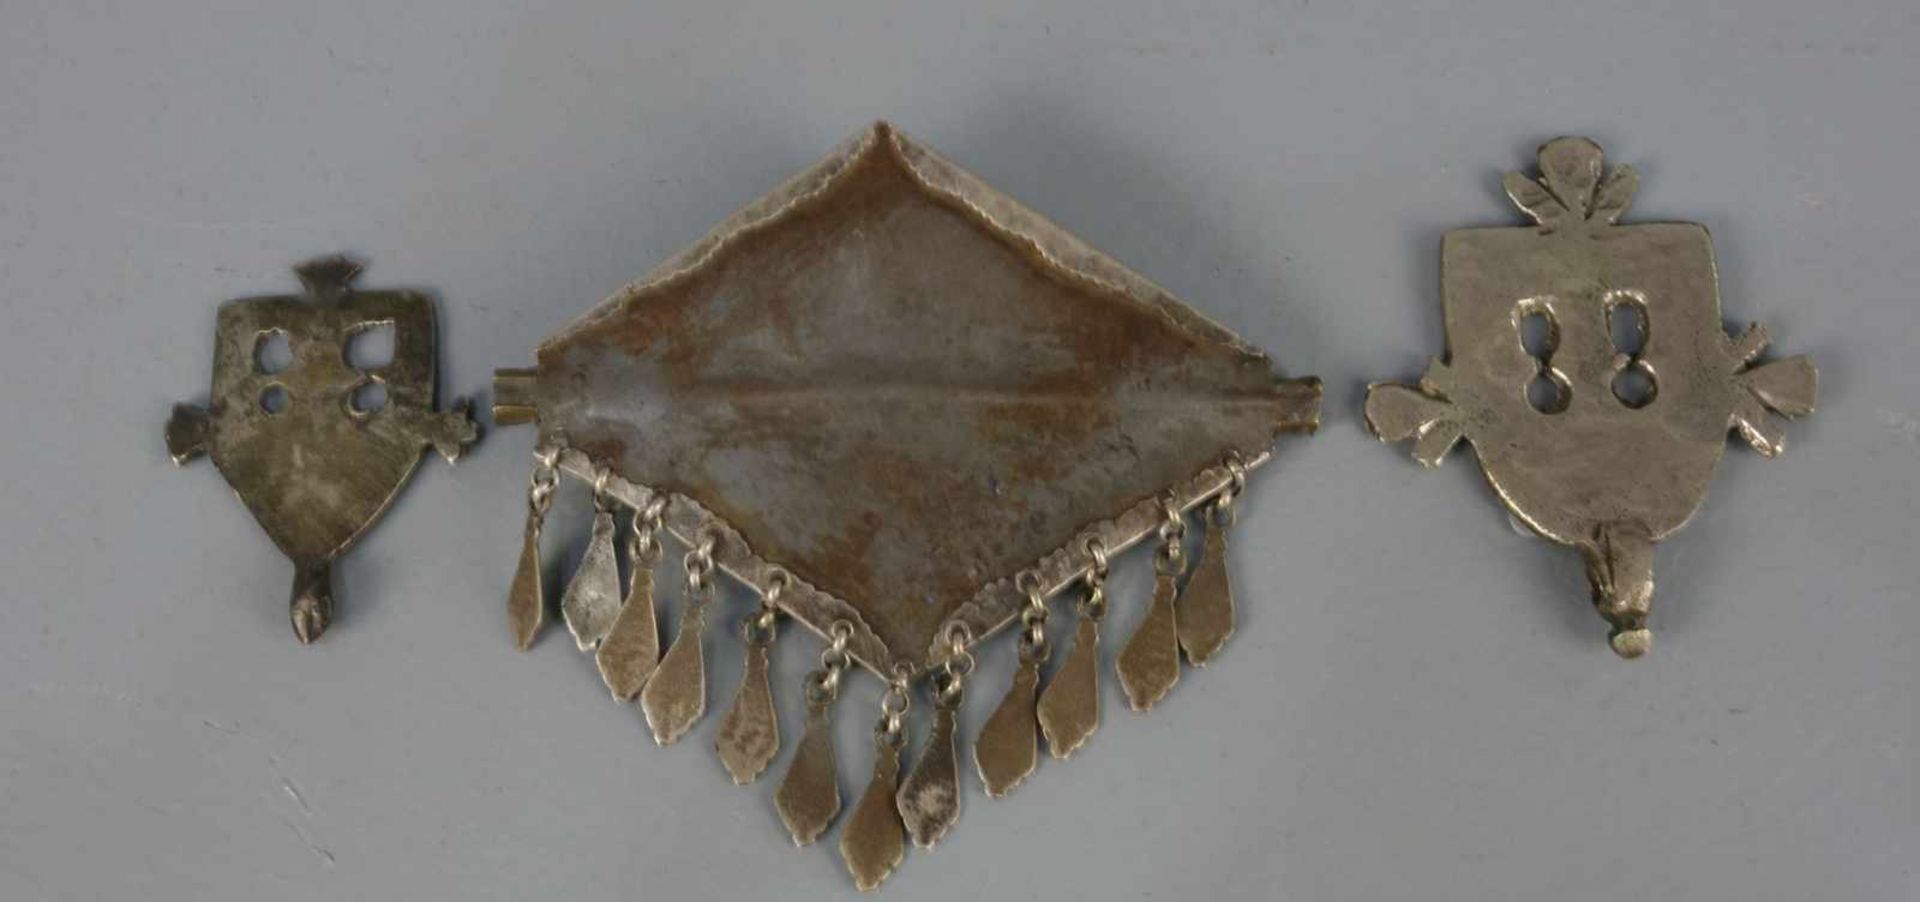 BERBER-SCHMUCK: 3 AMULETTE / ANHÄNGER / oriental jewellery, Taroudannt, Marokko, Silber und - Image 2 of 2